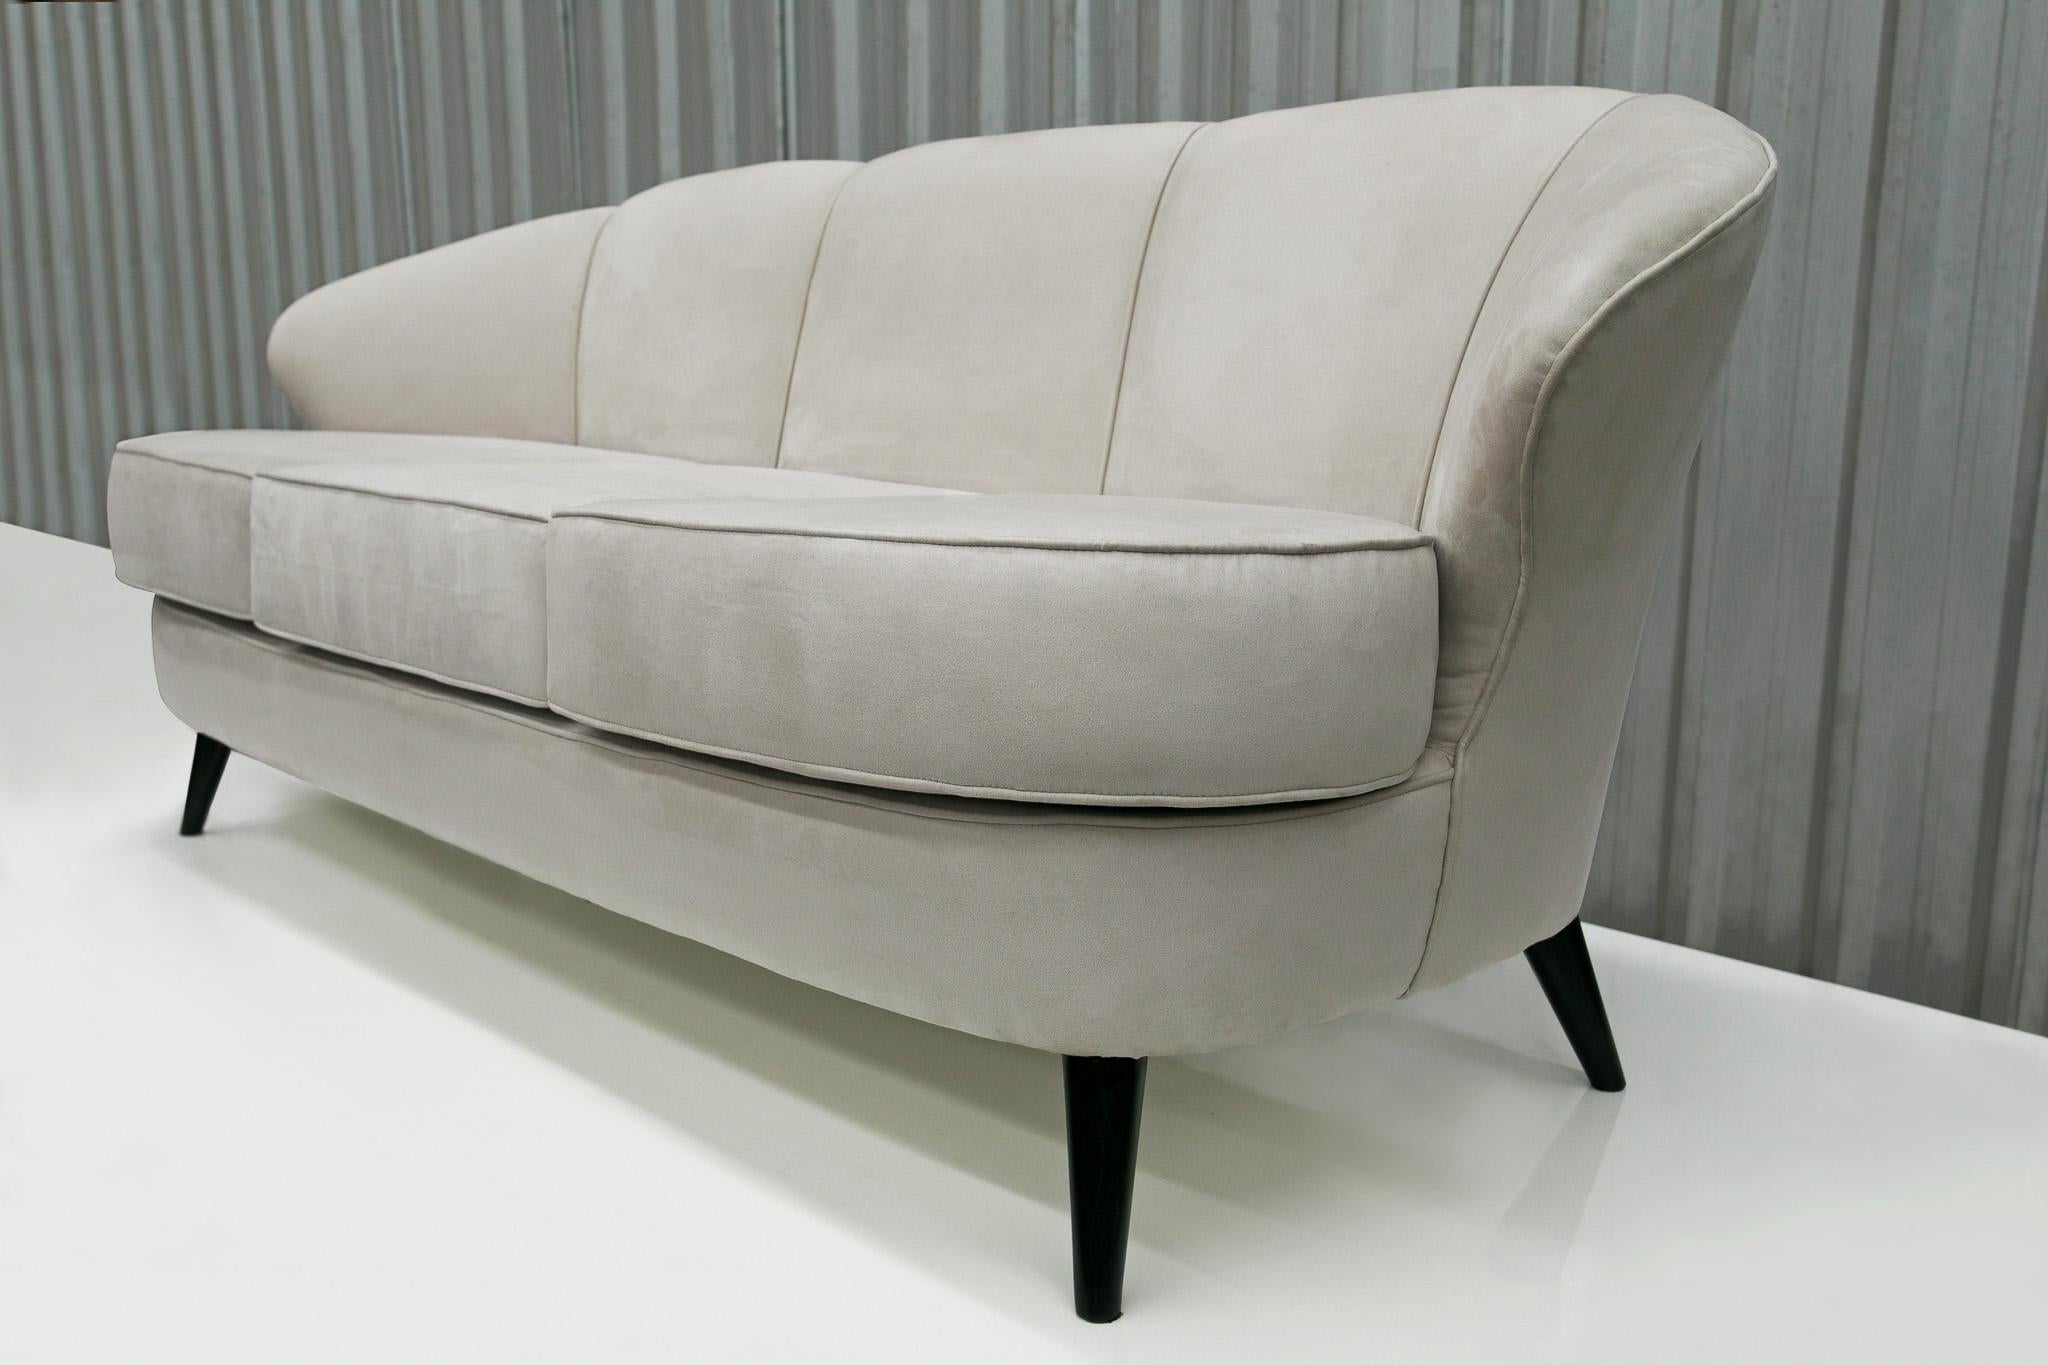 Brazilian Midcentury Modern Sofa in Hardwood & Grey Velvet by Joaquim Tenreiro Brazil 1960 For Sale